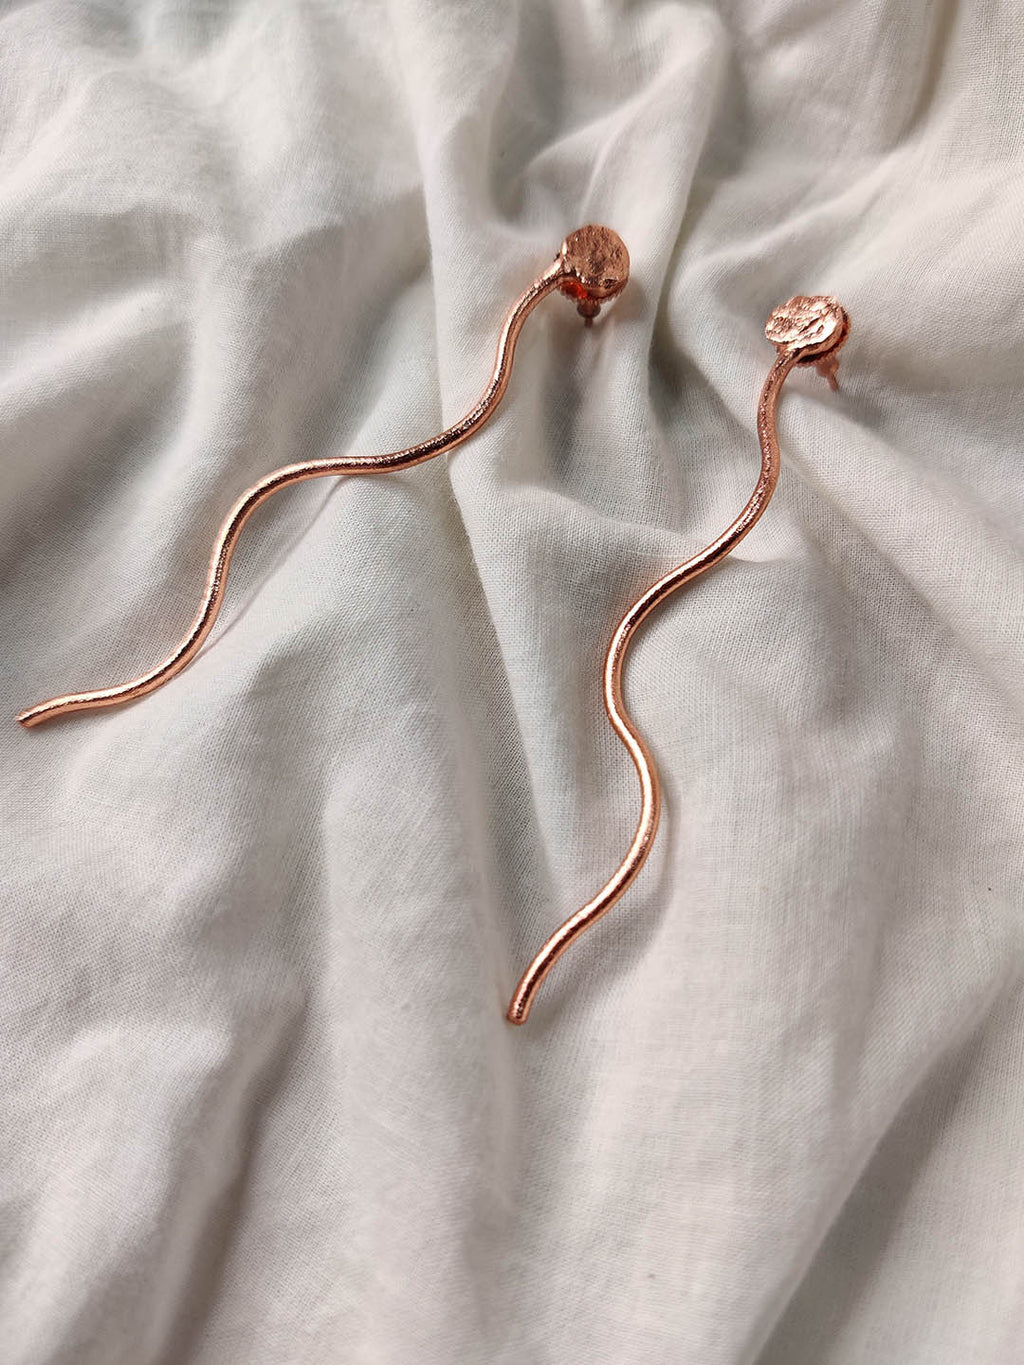 Rose Gold Plated Thread Sticks, Earrings - Shopberserk